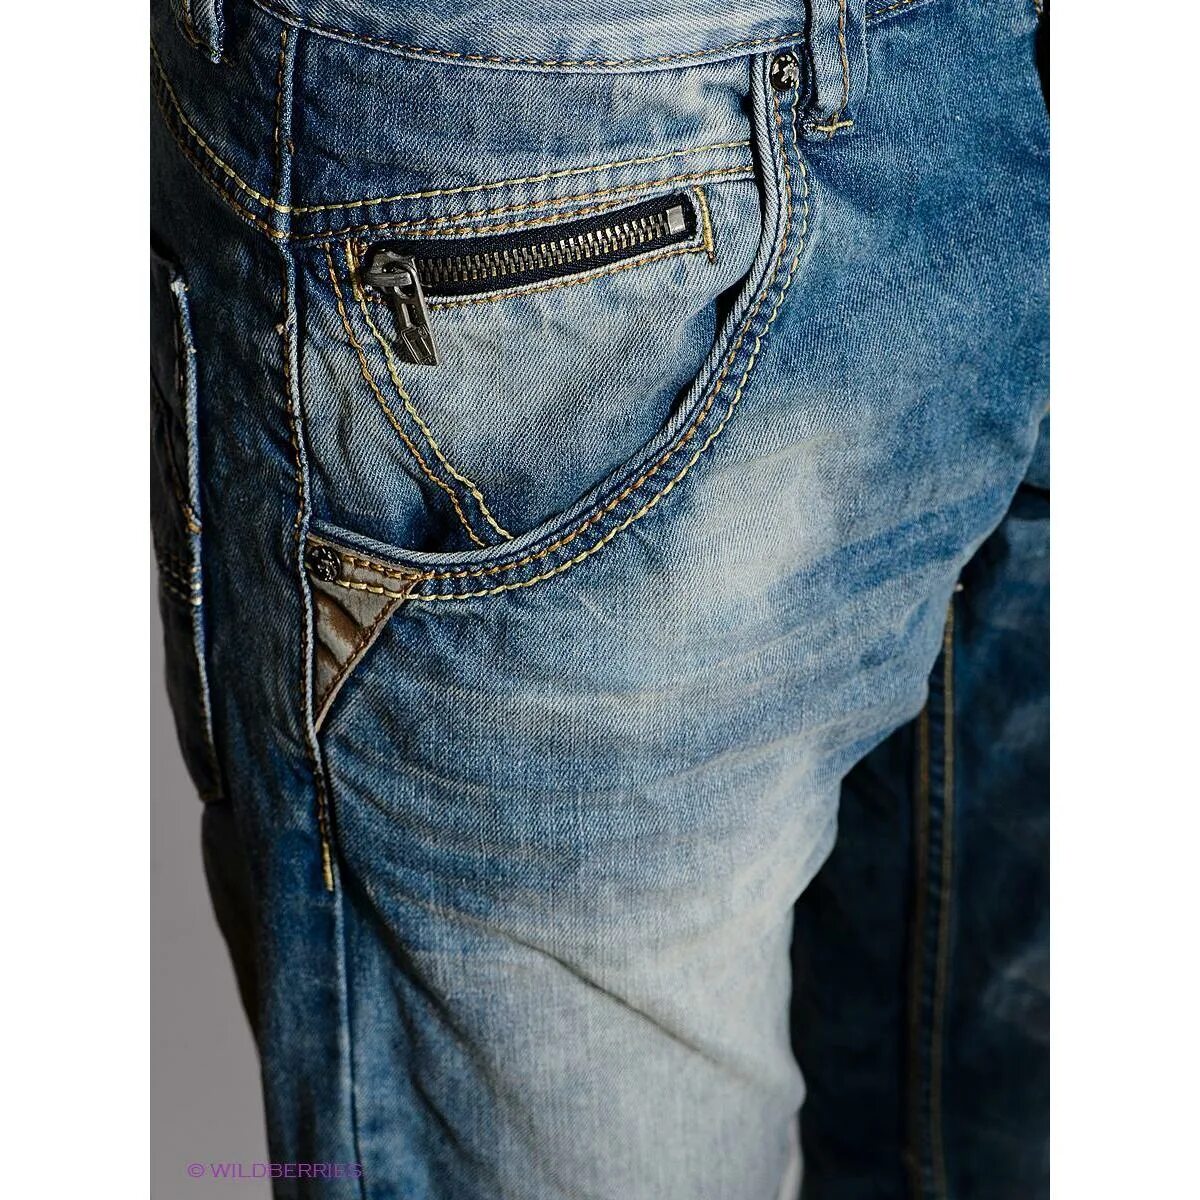 Итальянские джинсы мужские. Джинсы timezone мужские. Тайм зона джинсы мужские. Фирмы джинс мужских. Джинсы мужские больших размеров купить в москве